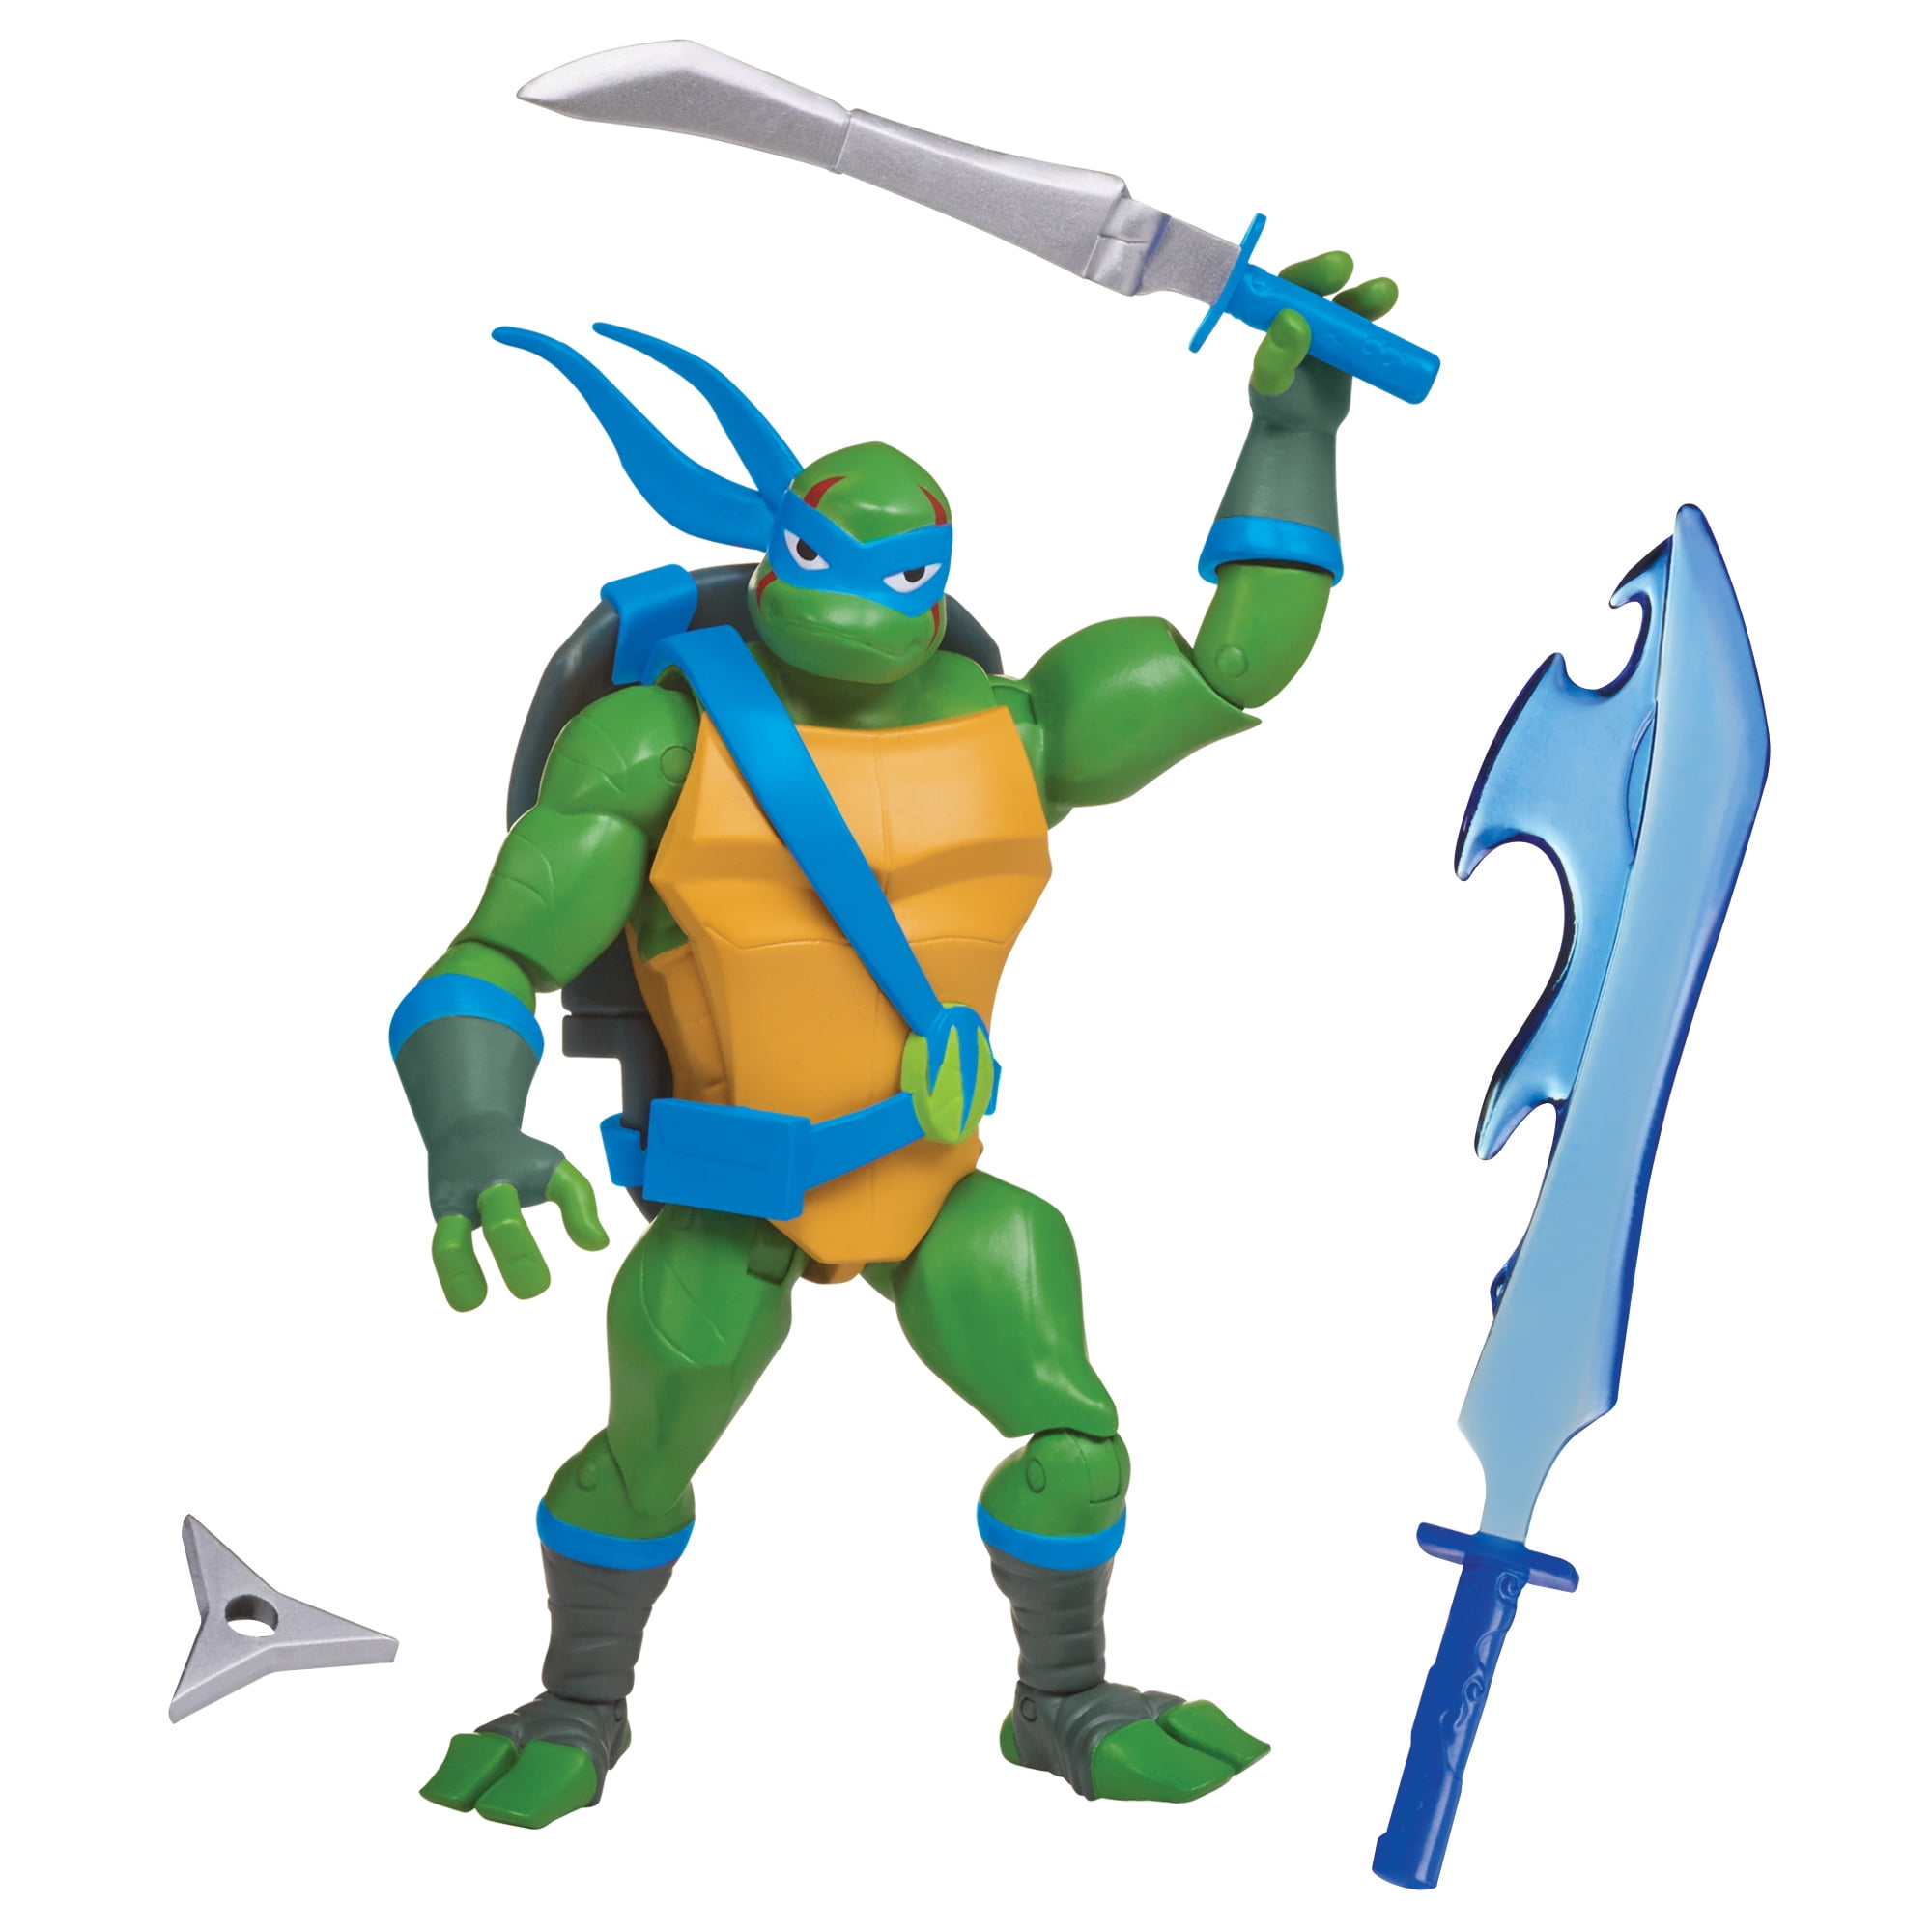 rise of the teenage mutant ninja turtles action figures wave 2